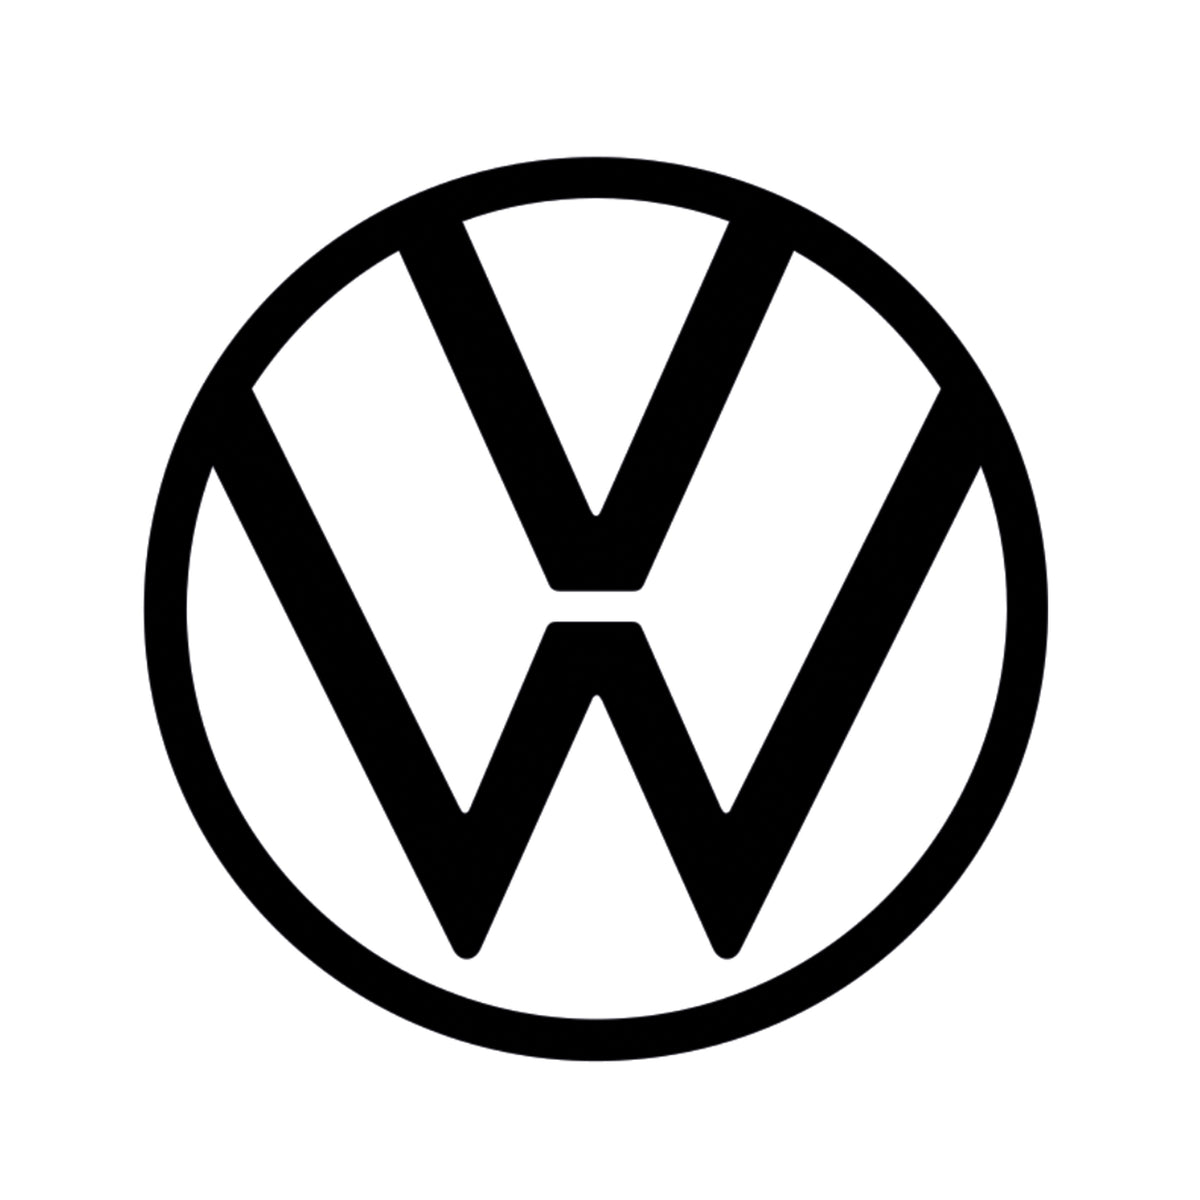 VW T6 Caravelle (ab 2015) Sitzbezug [Fahrersitz] mit Armlehne [Grey] –  DriveDressy